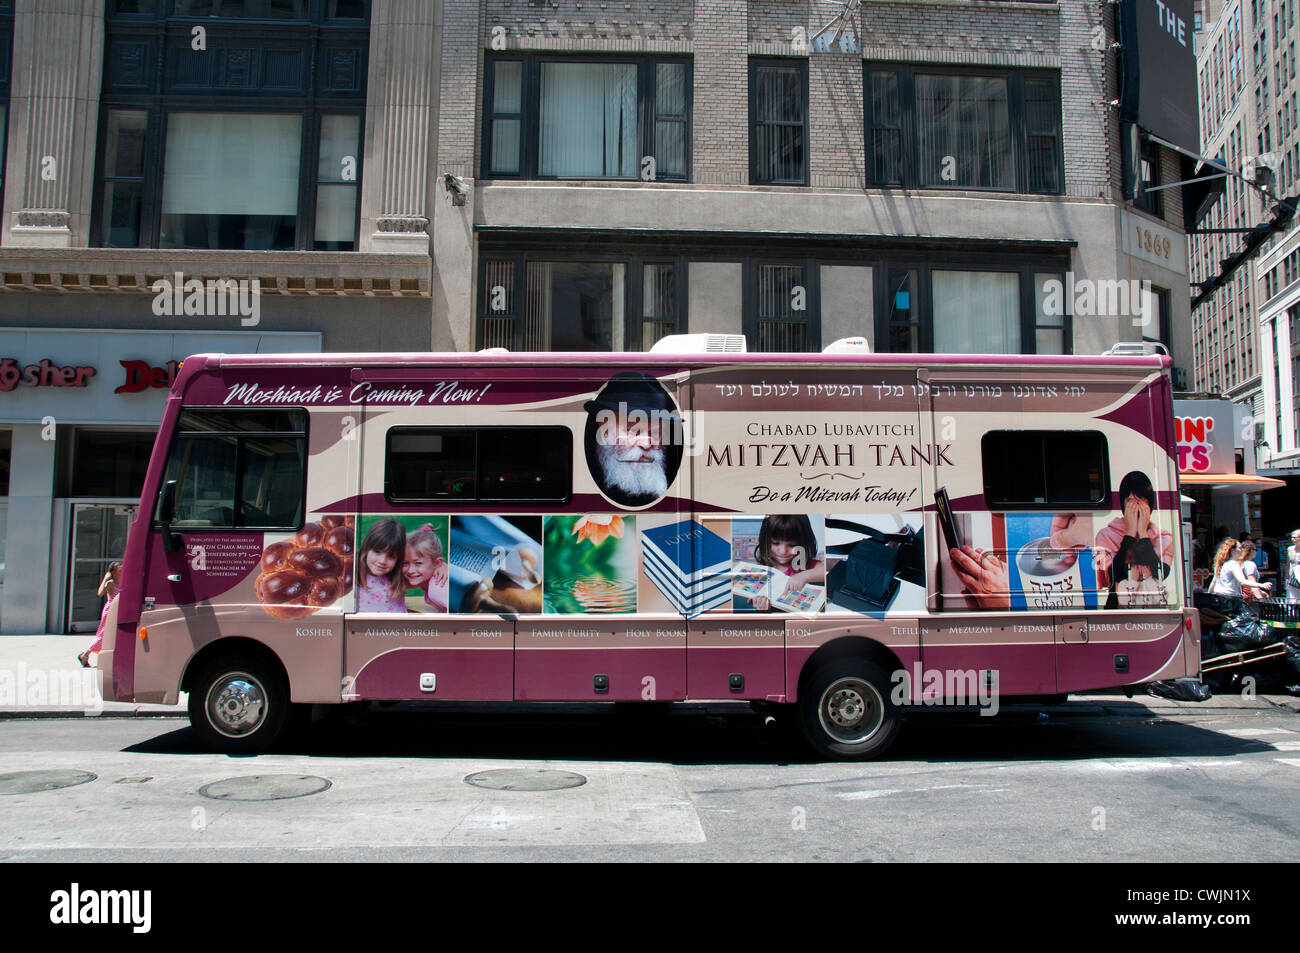 Juifs hassidiques Chabad Lubavitch tanks mitzvah ou synagogues sur Wheels Manhattan, New York City , américain, États-Unis d’Amérique, Etats-Unis Banque D'Images